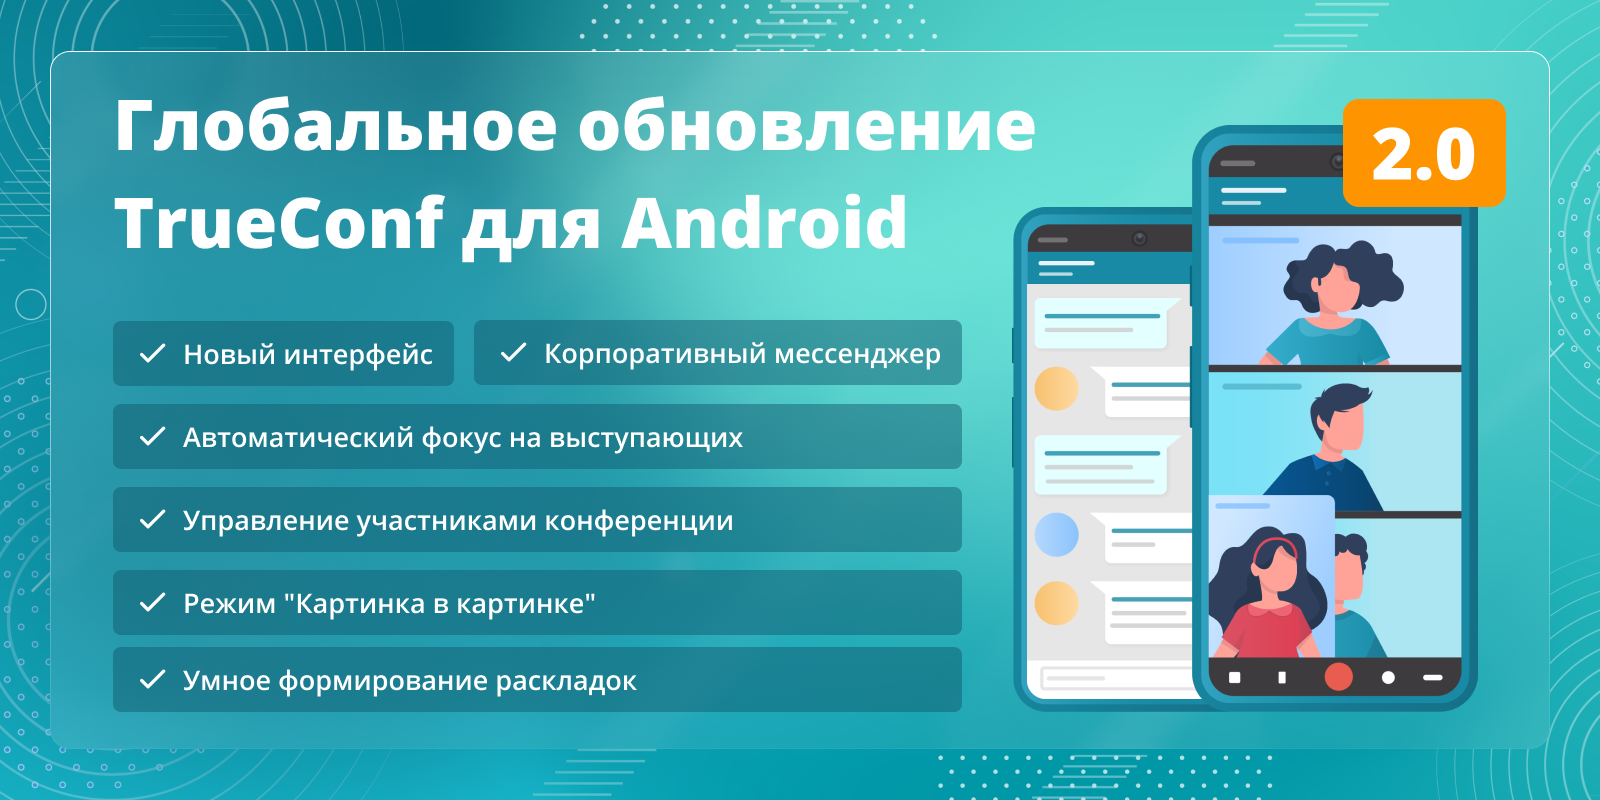 TrueConf 2.0 для Android: видеосвязь и мессенджер в одном приложении 1